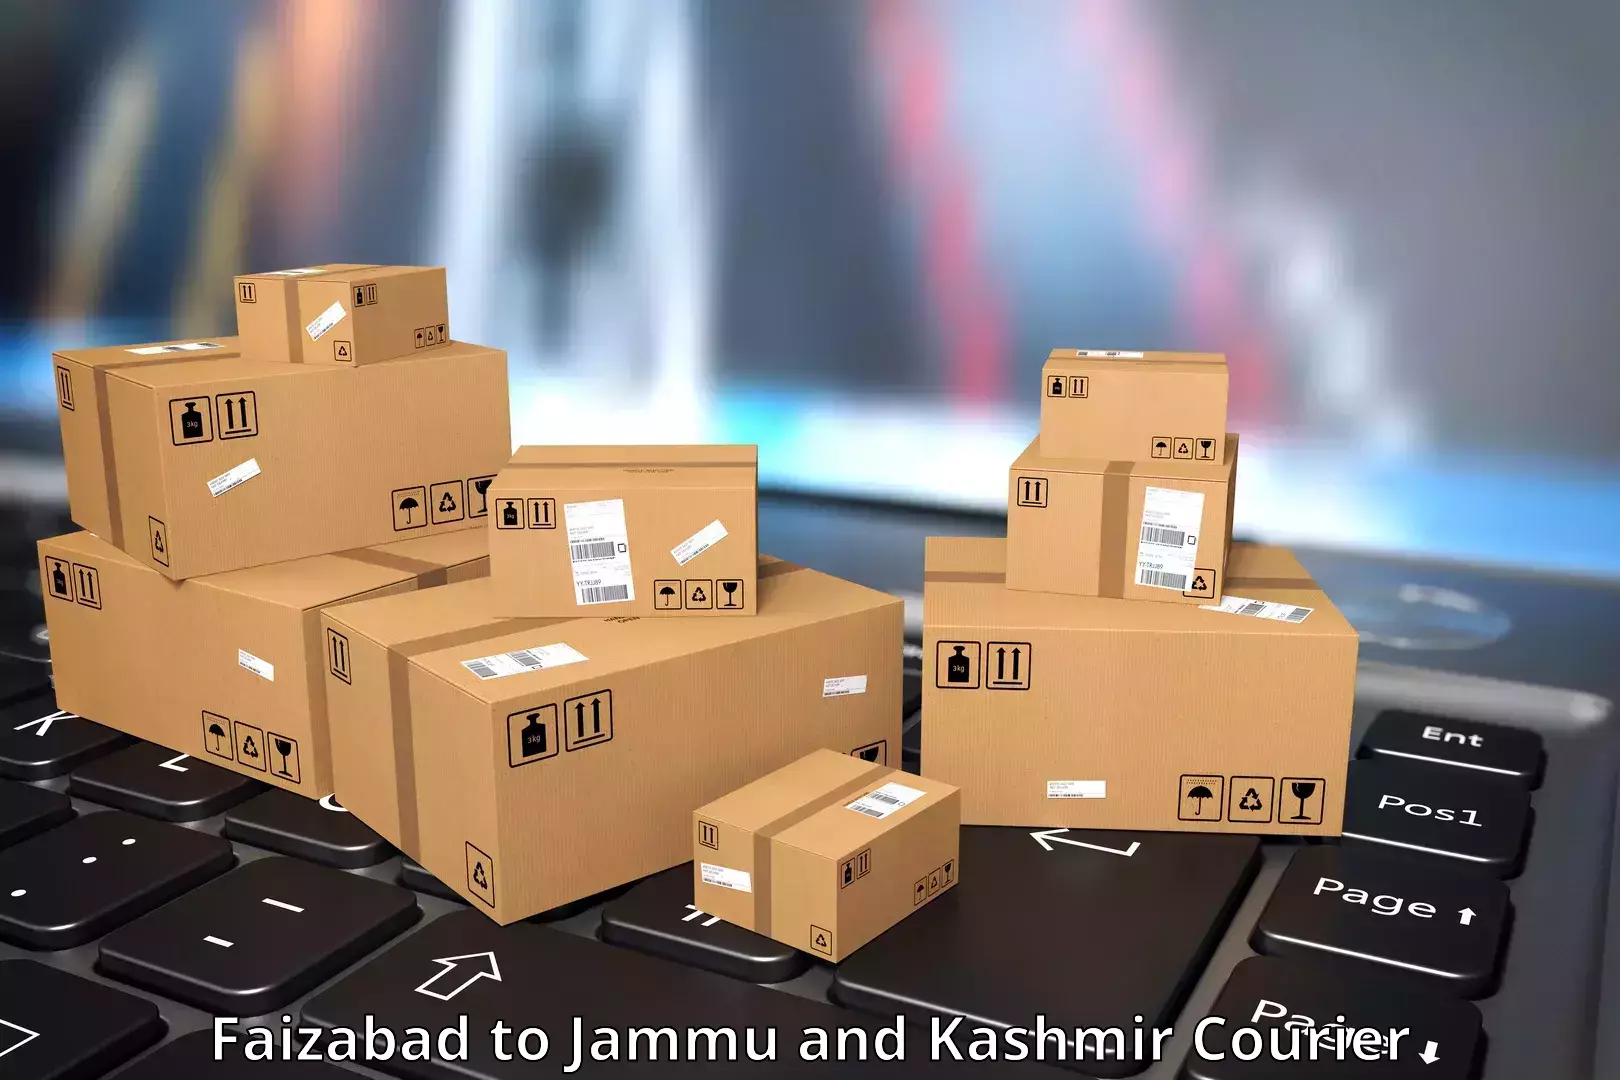 Digital courier platforms Faizabad to Sopore